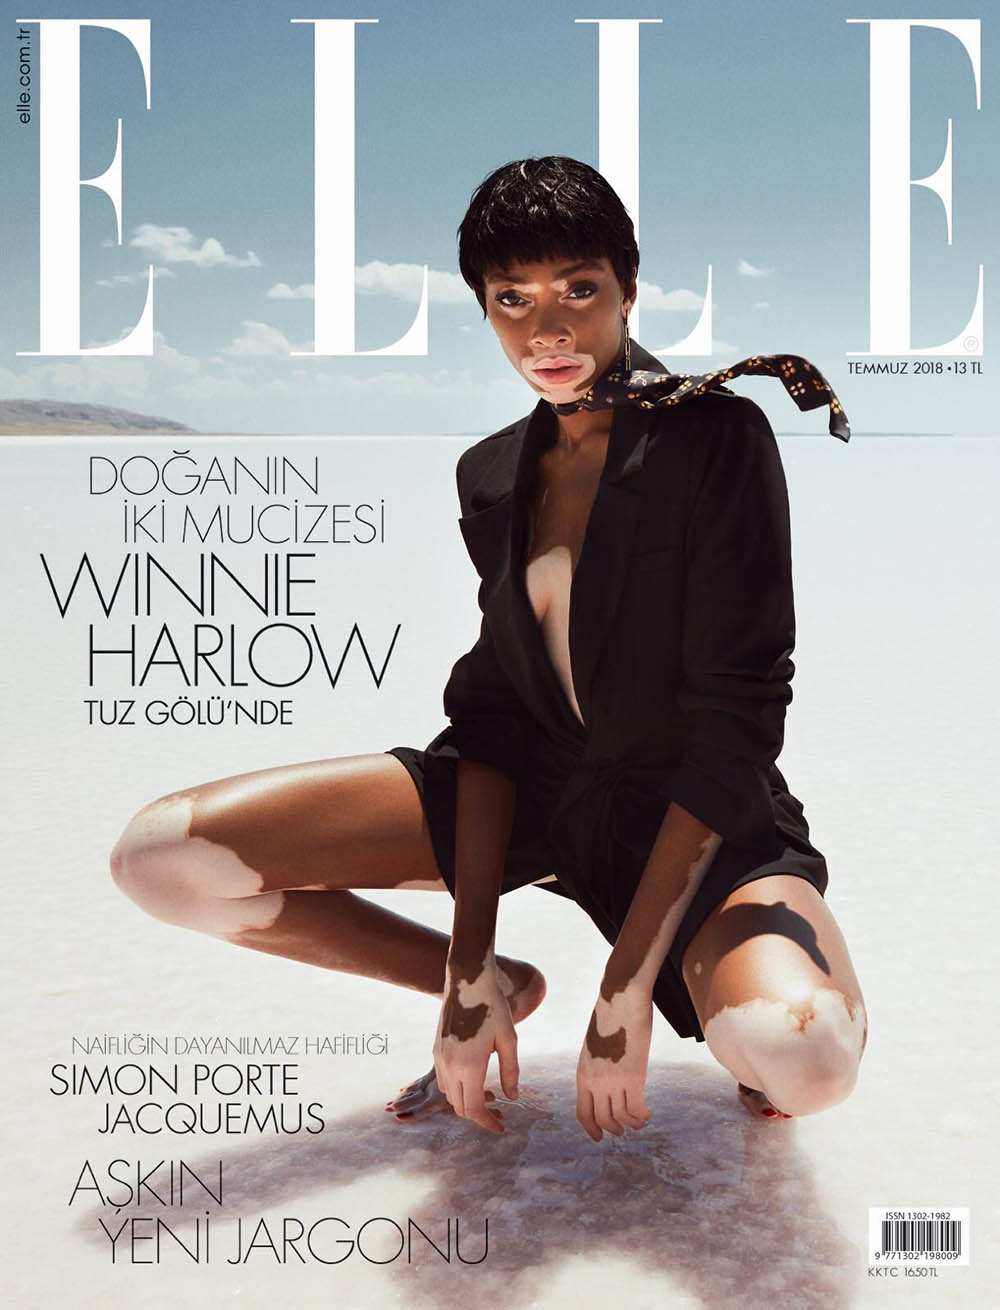 Winnie Harlow covers Elle Turkey July 2018 by Emre Guven